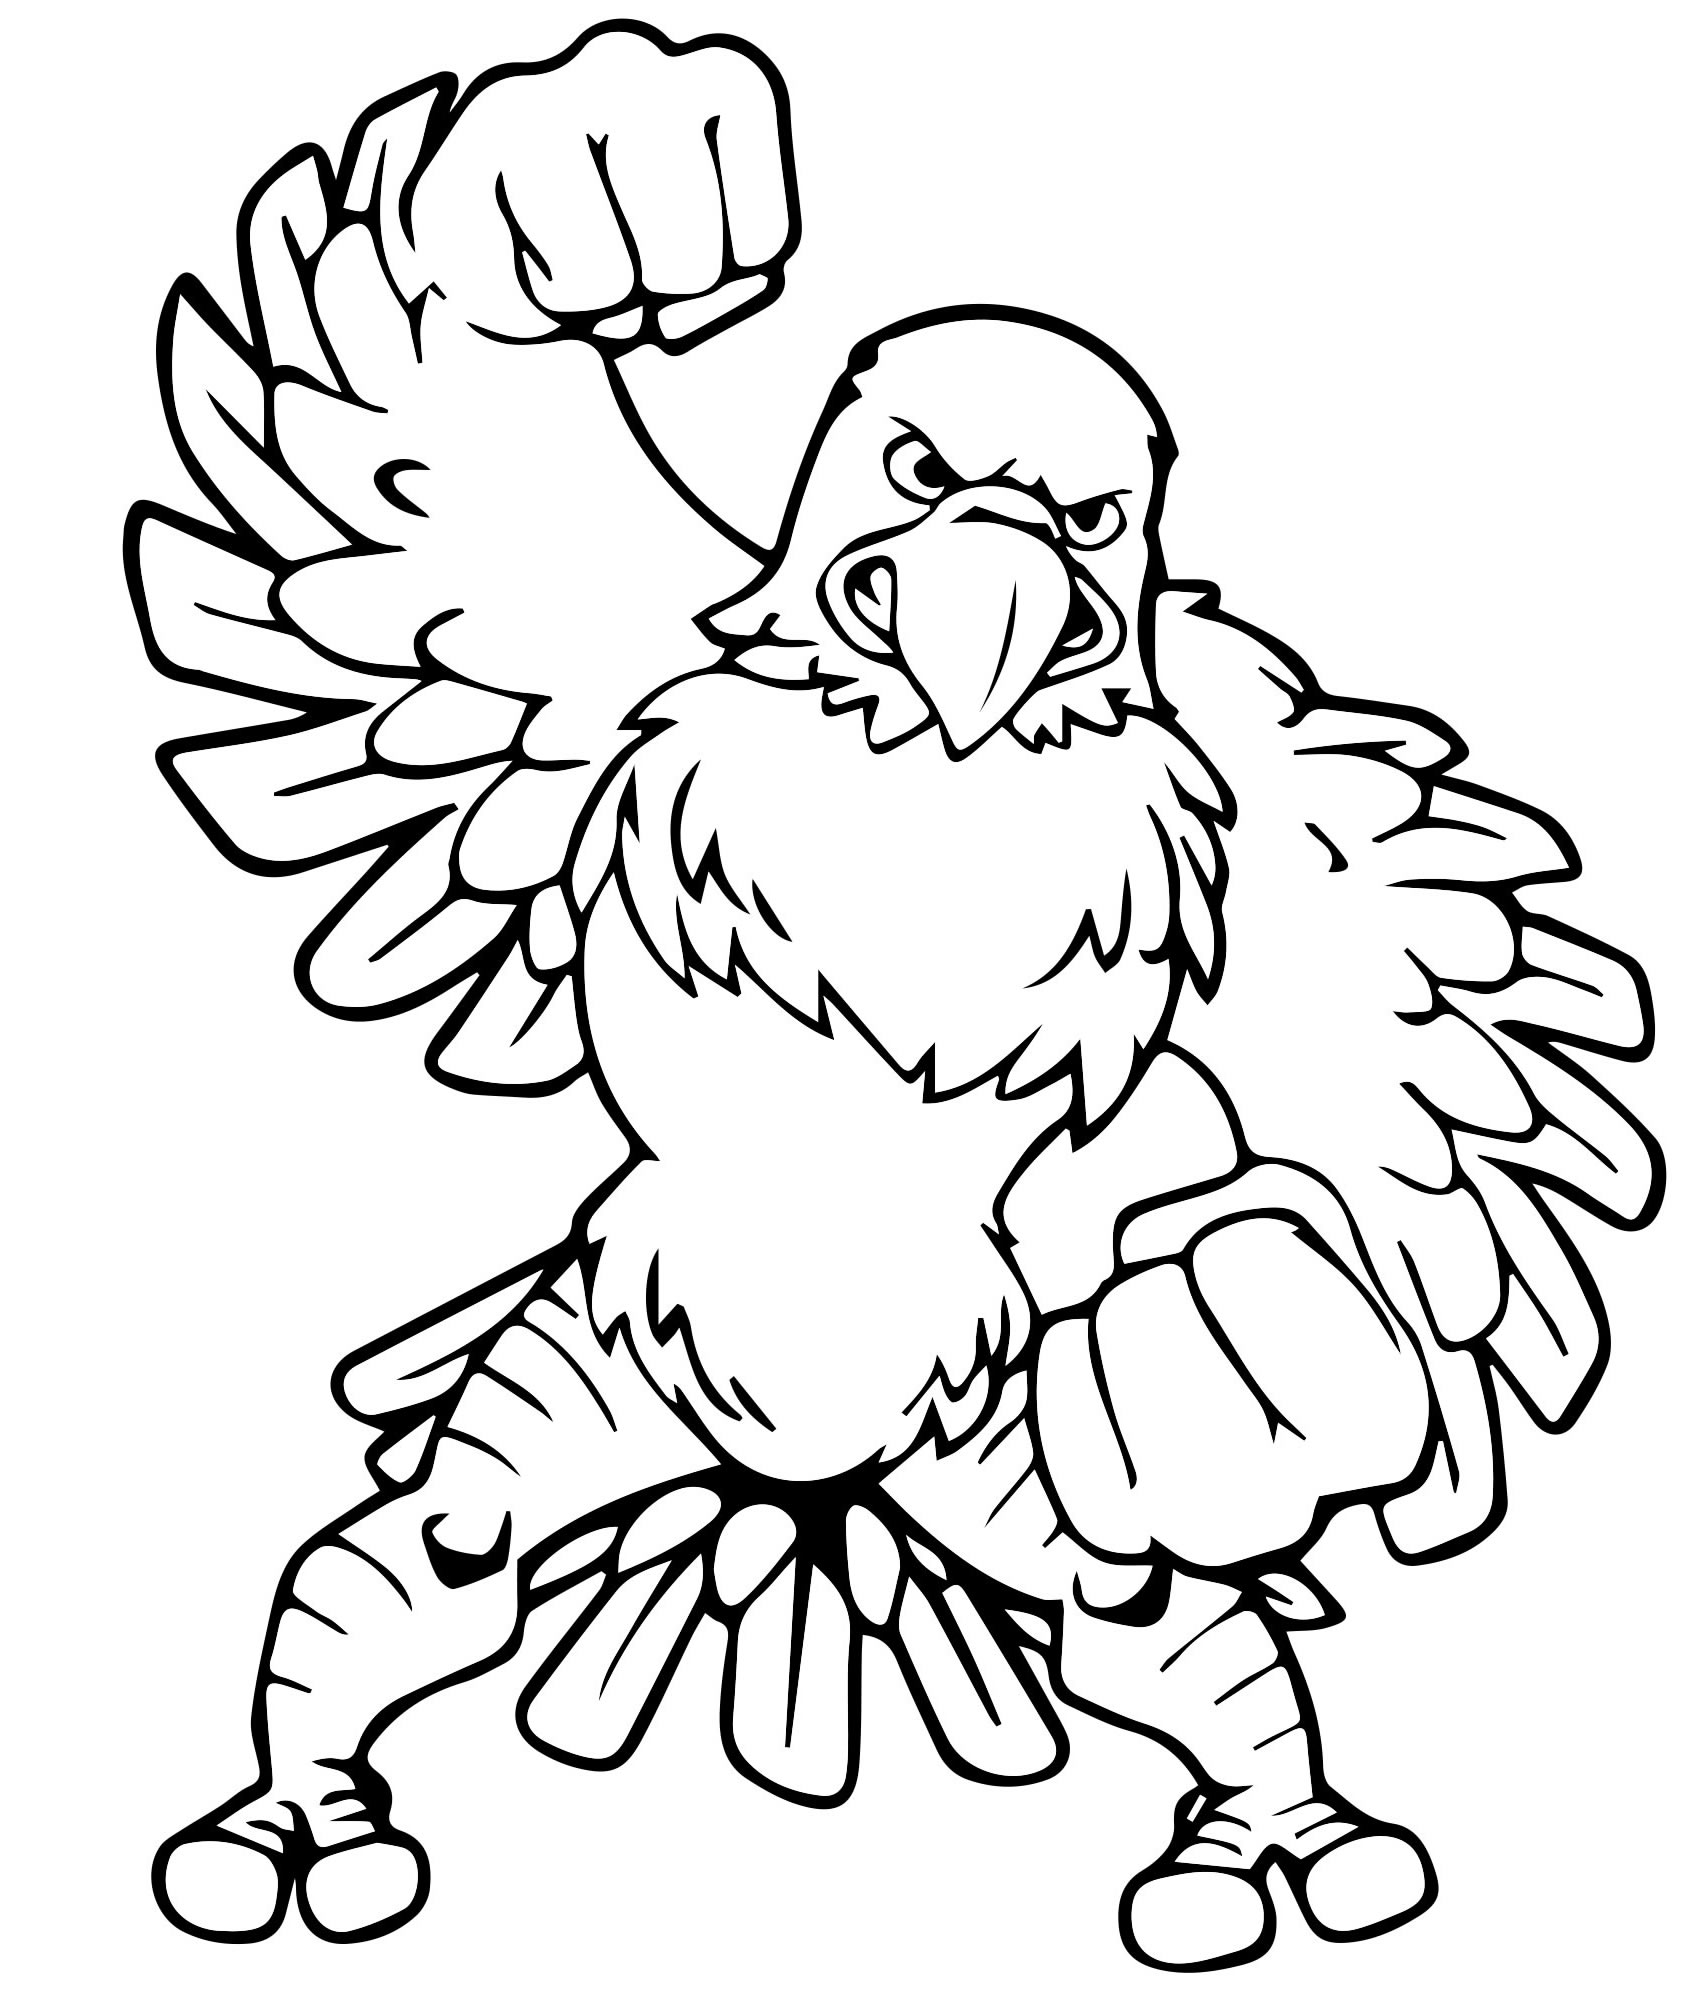 Раскраски страницу. Цвет меня: орла. Симпатичный лысый орел сидит и улыбается.